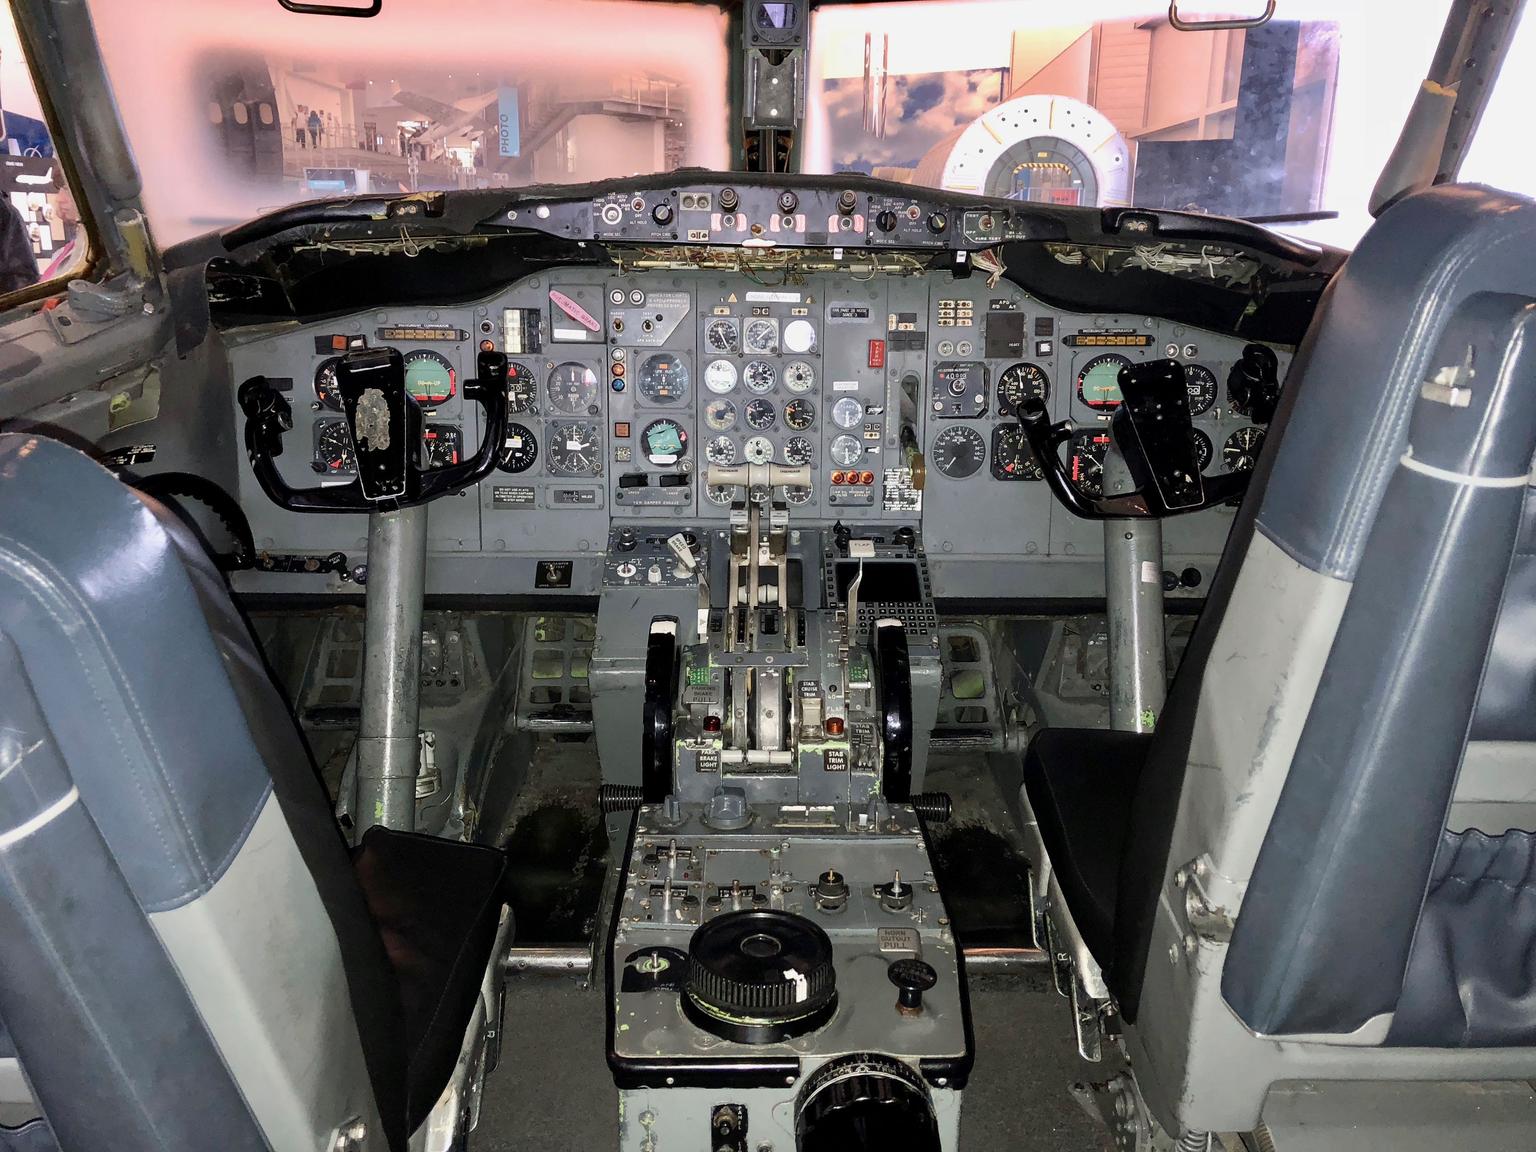 Boeing 727 cockpit